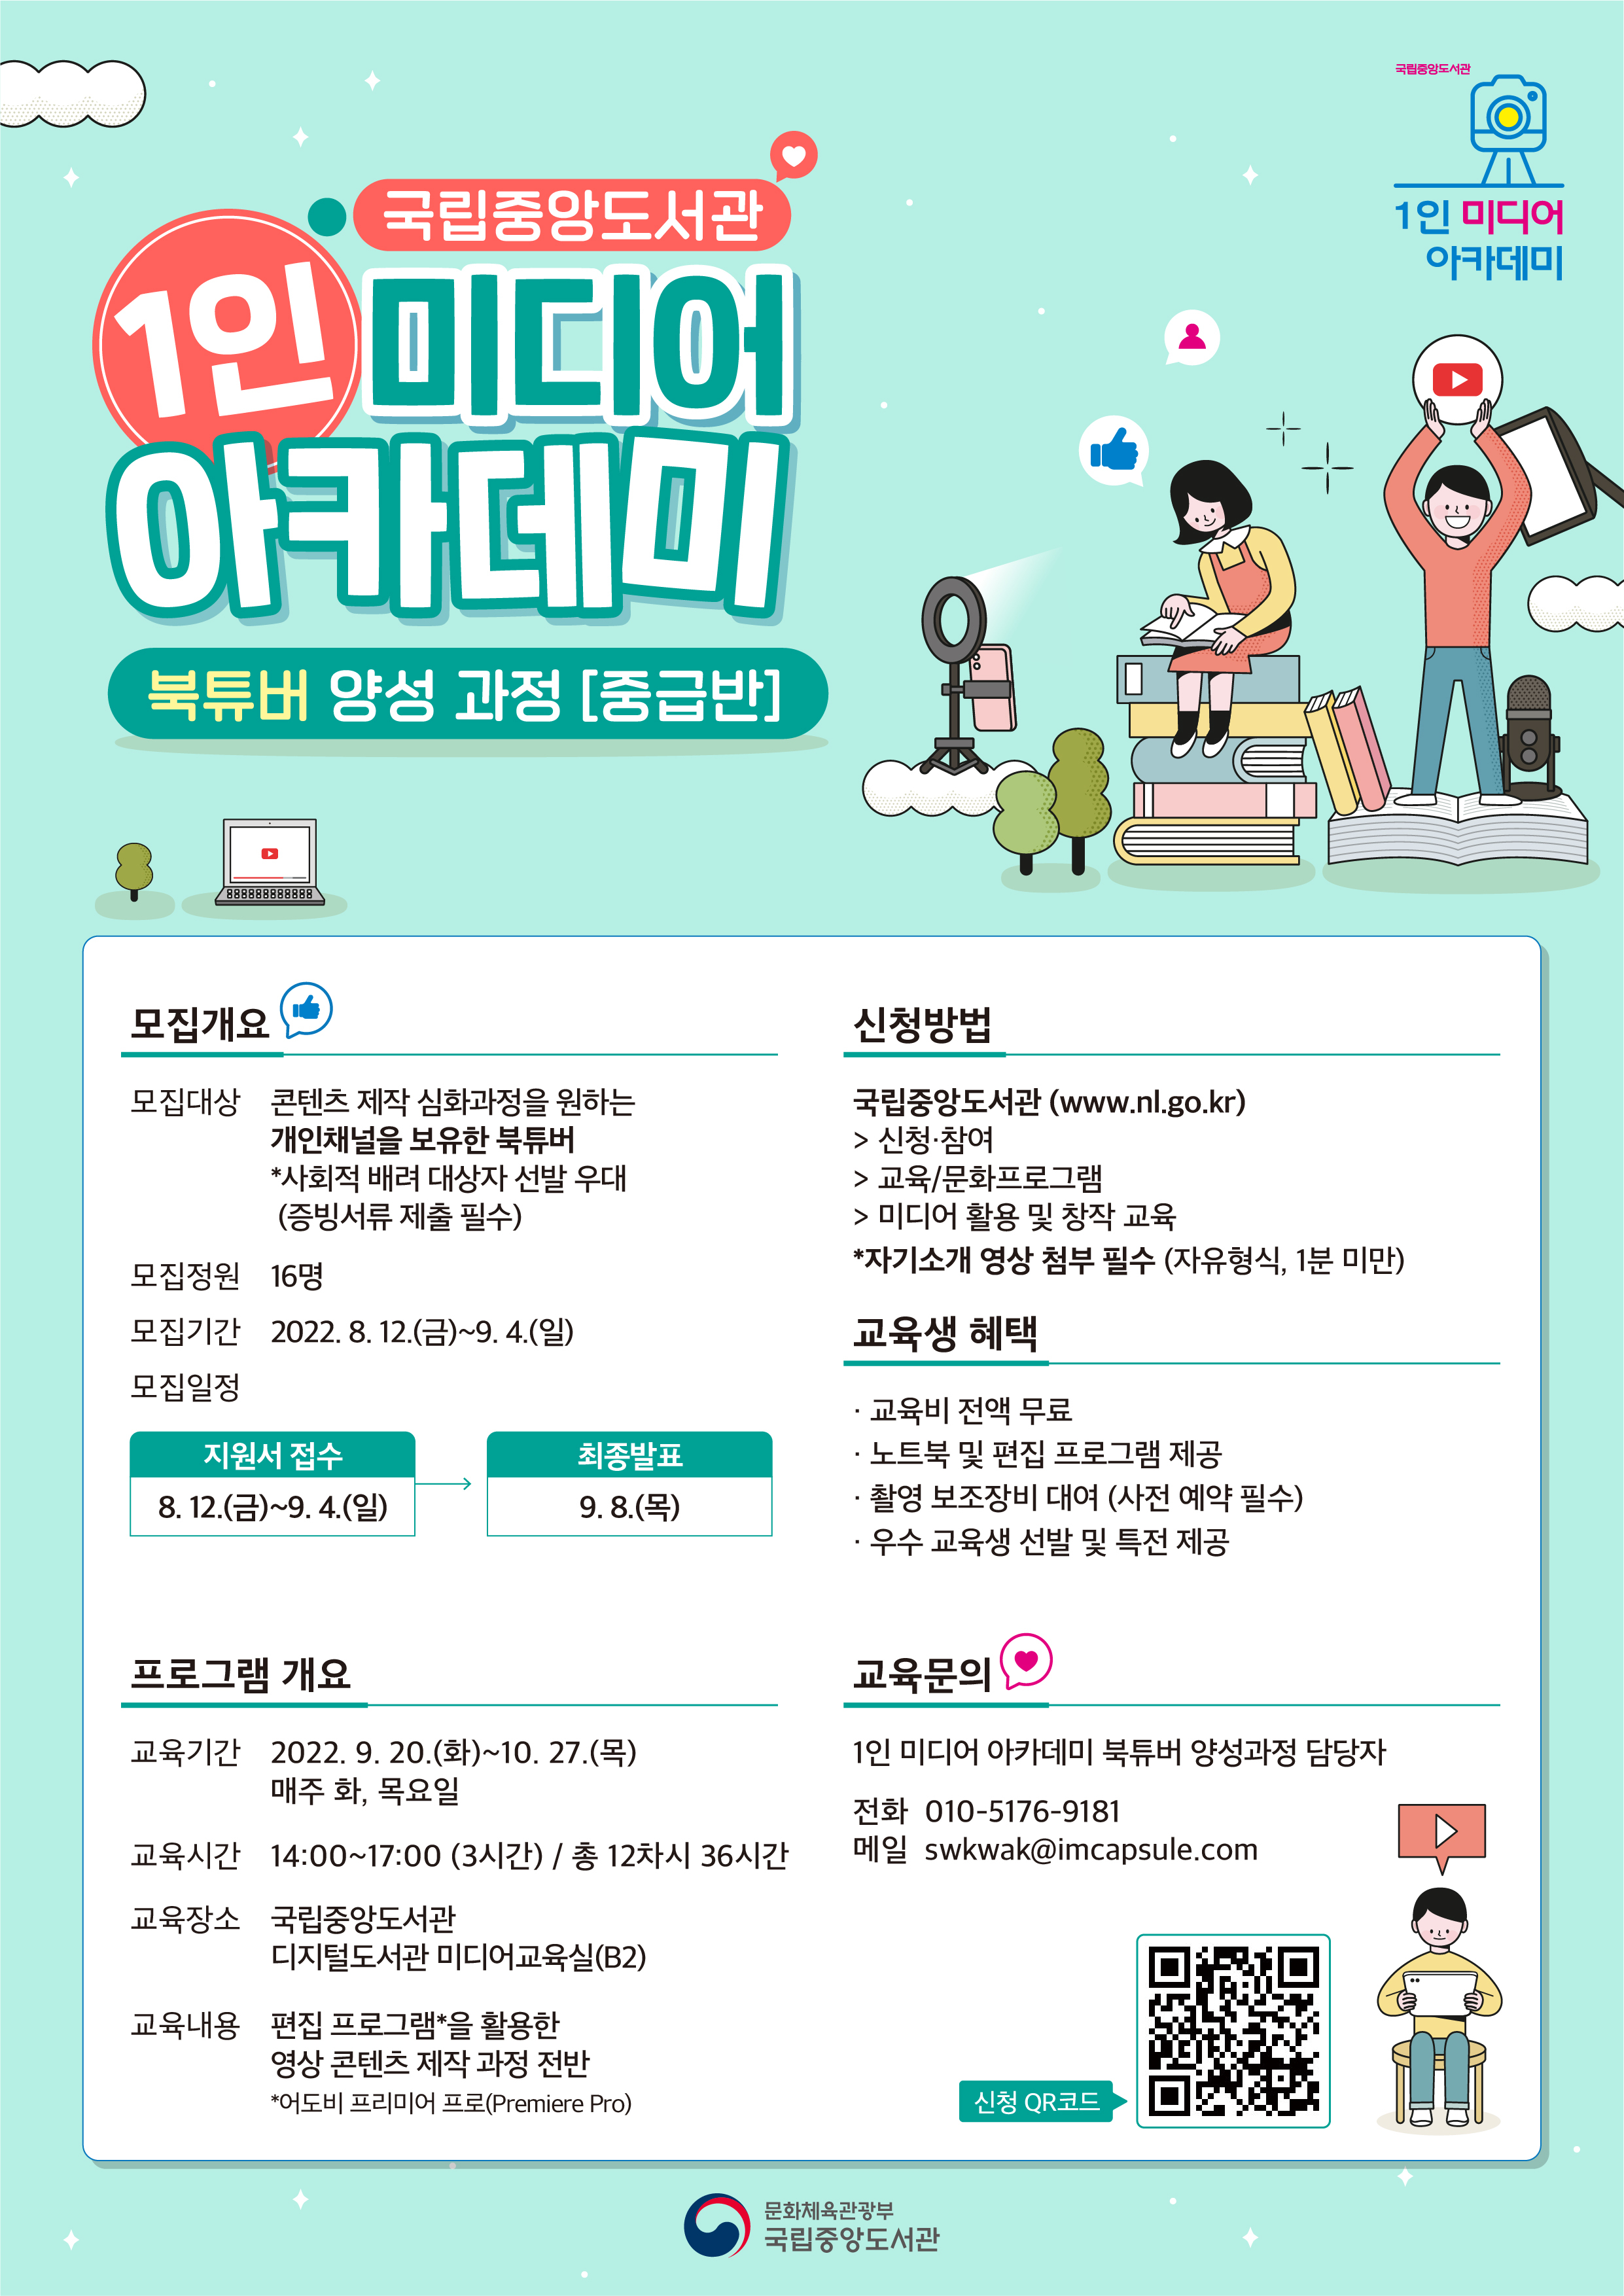 국립중앙도서관 1인 미디어 아카데미 북튜버 양성과정 중급반